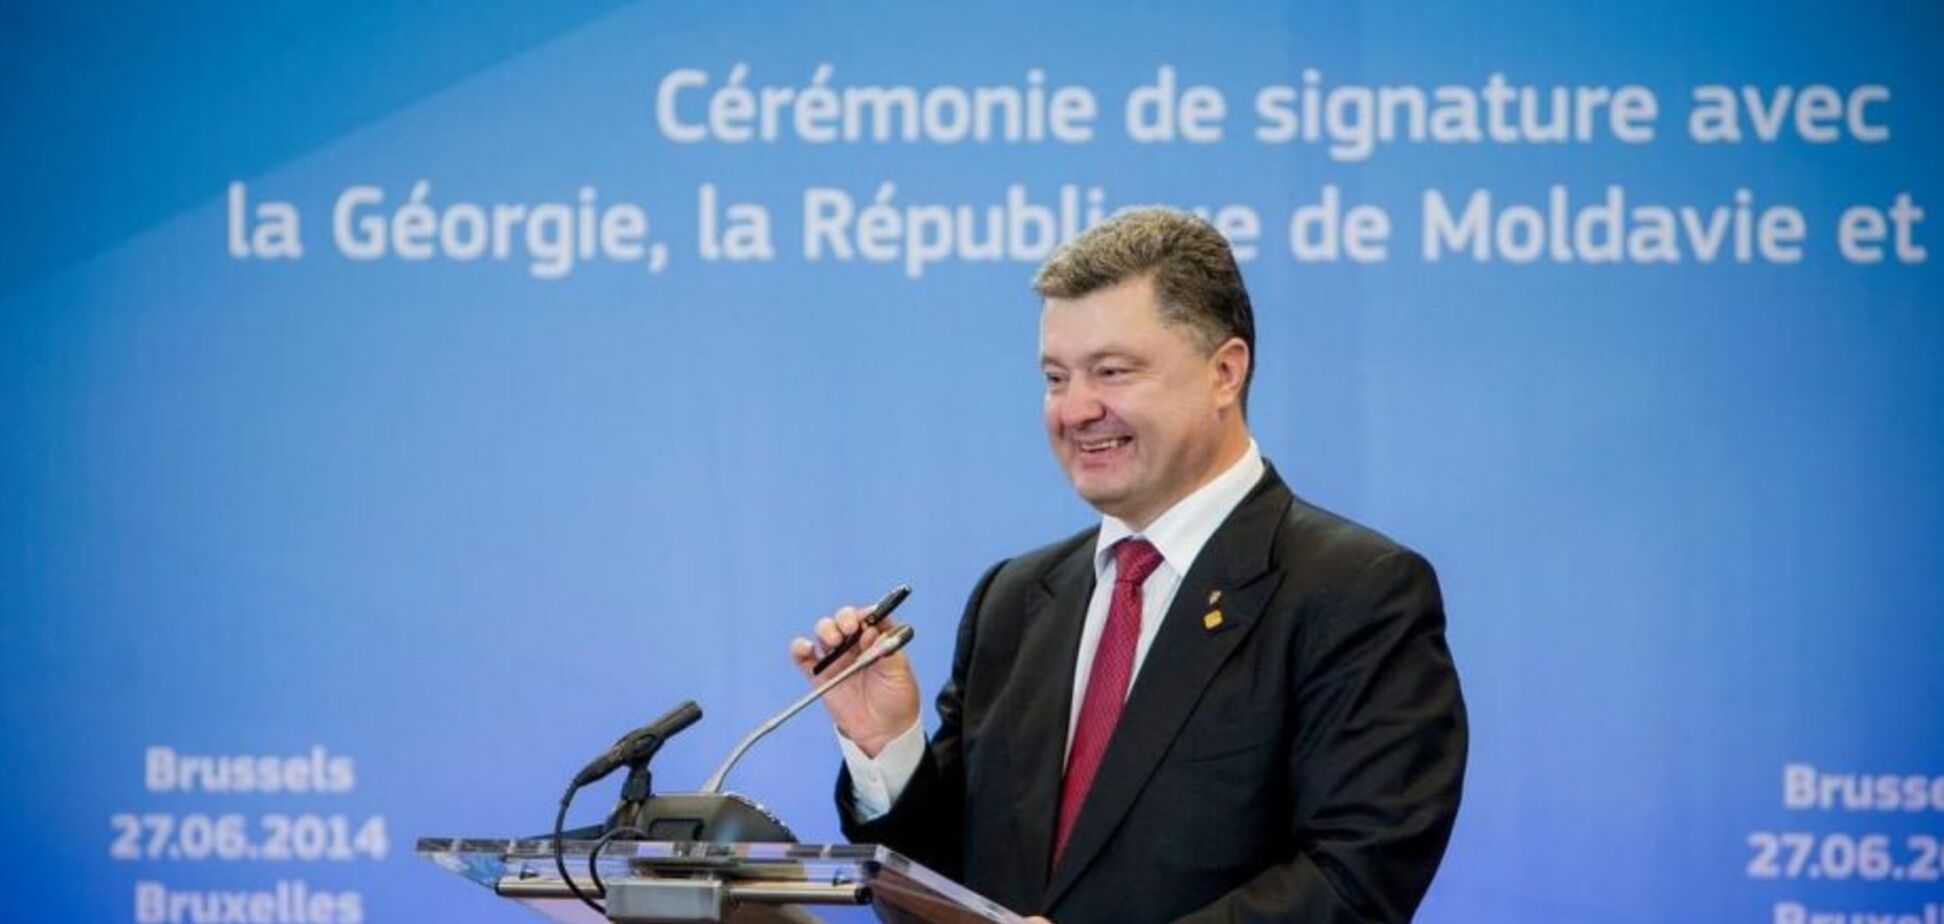 Україна повинна бути в Євросоюзі, це воля народу і обов’язок влади, – Порошенко